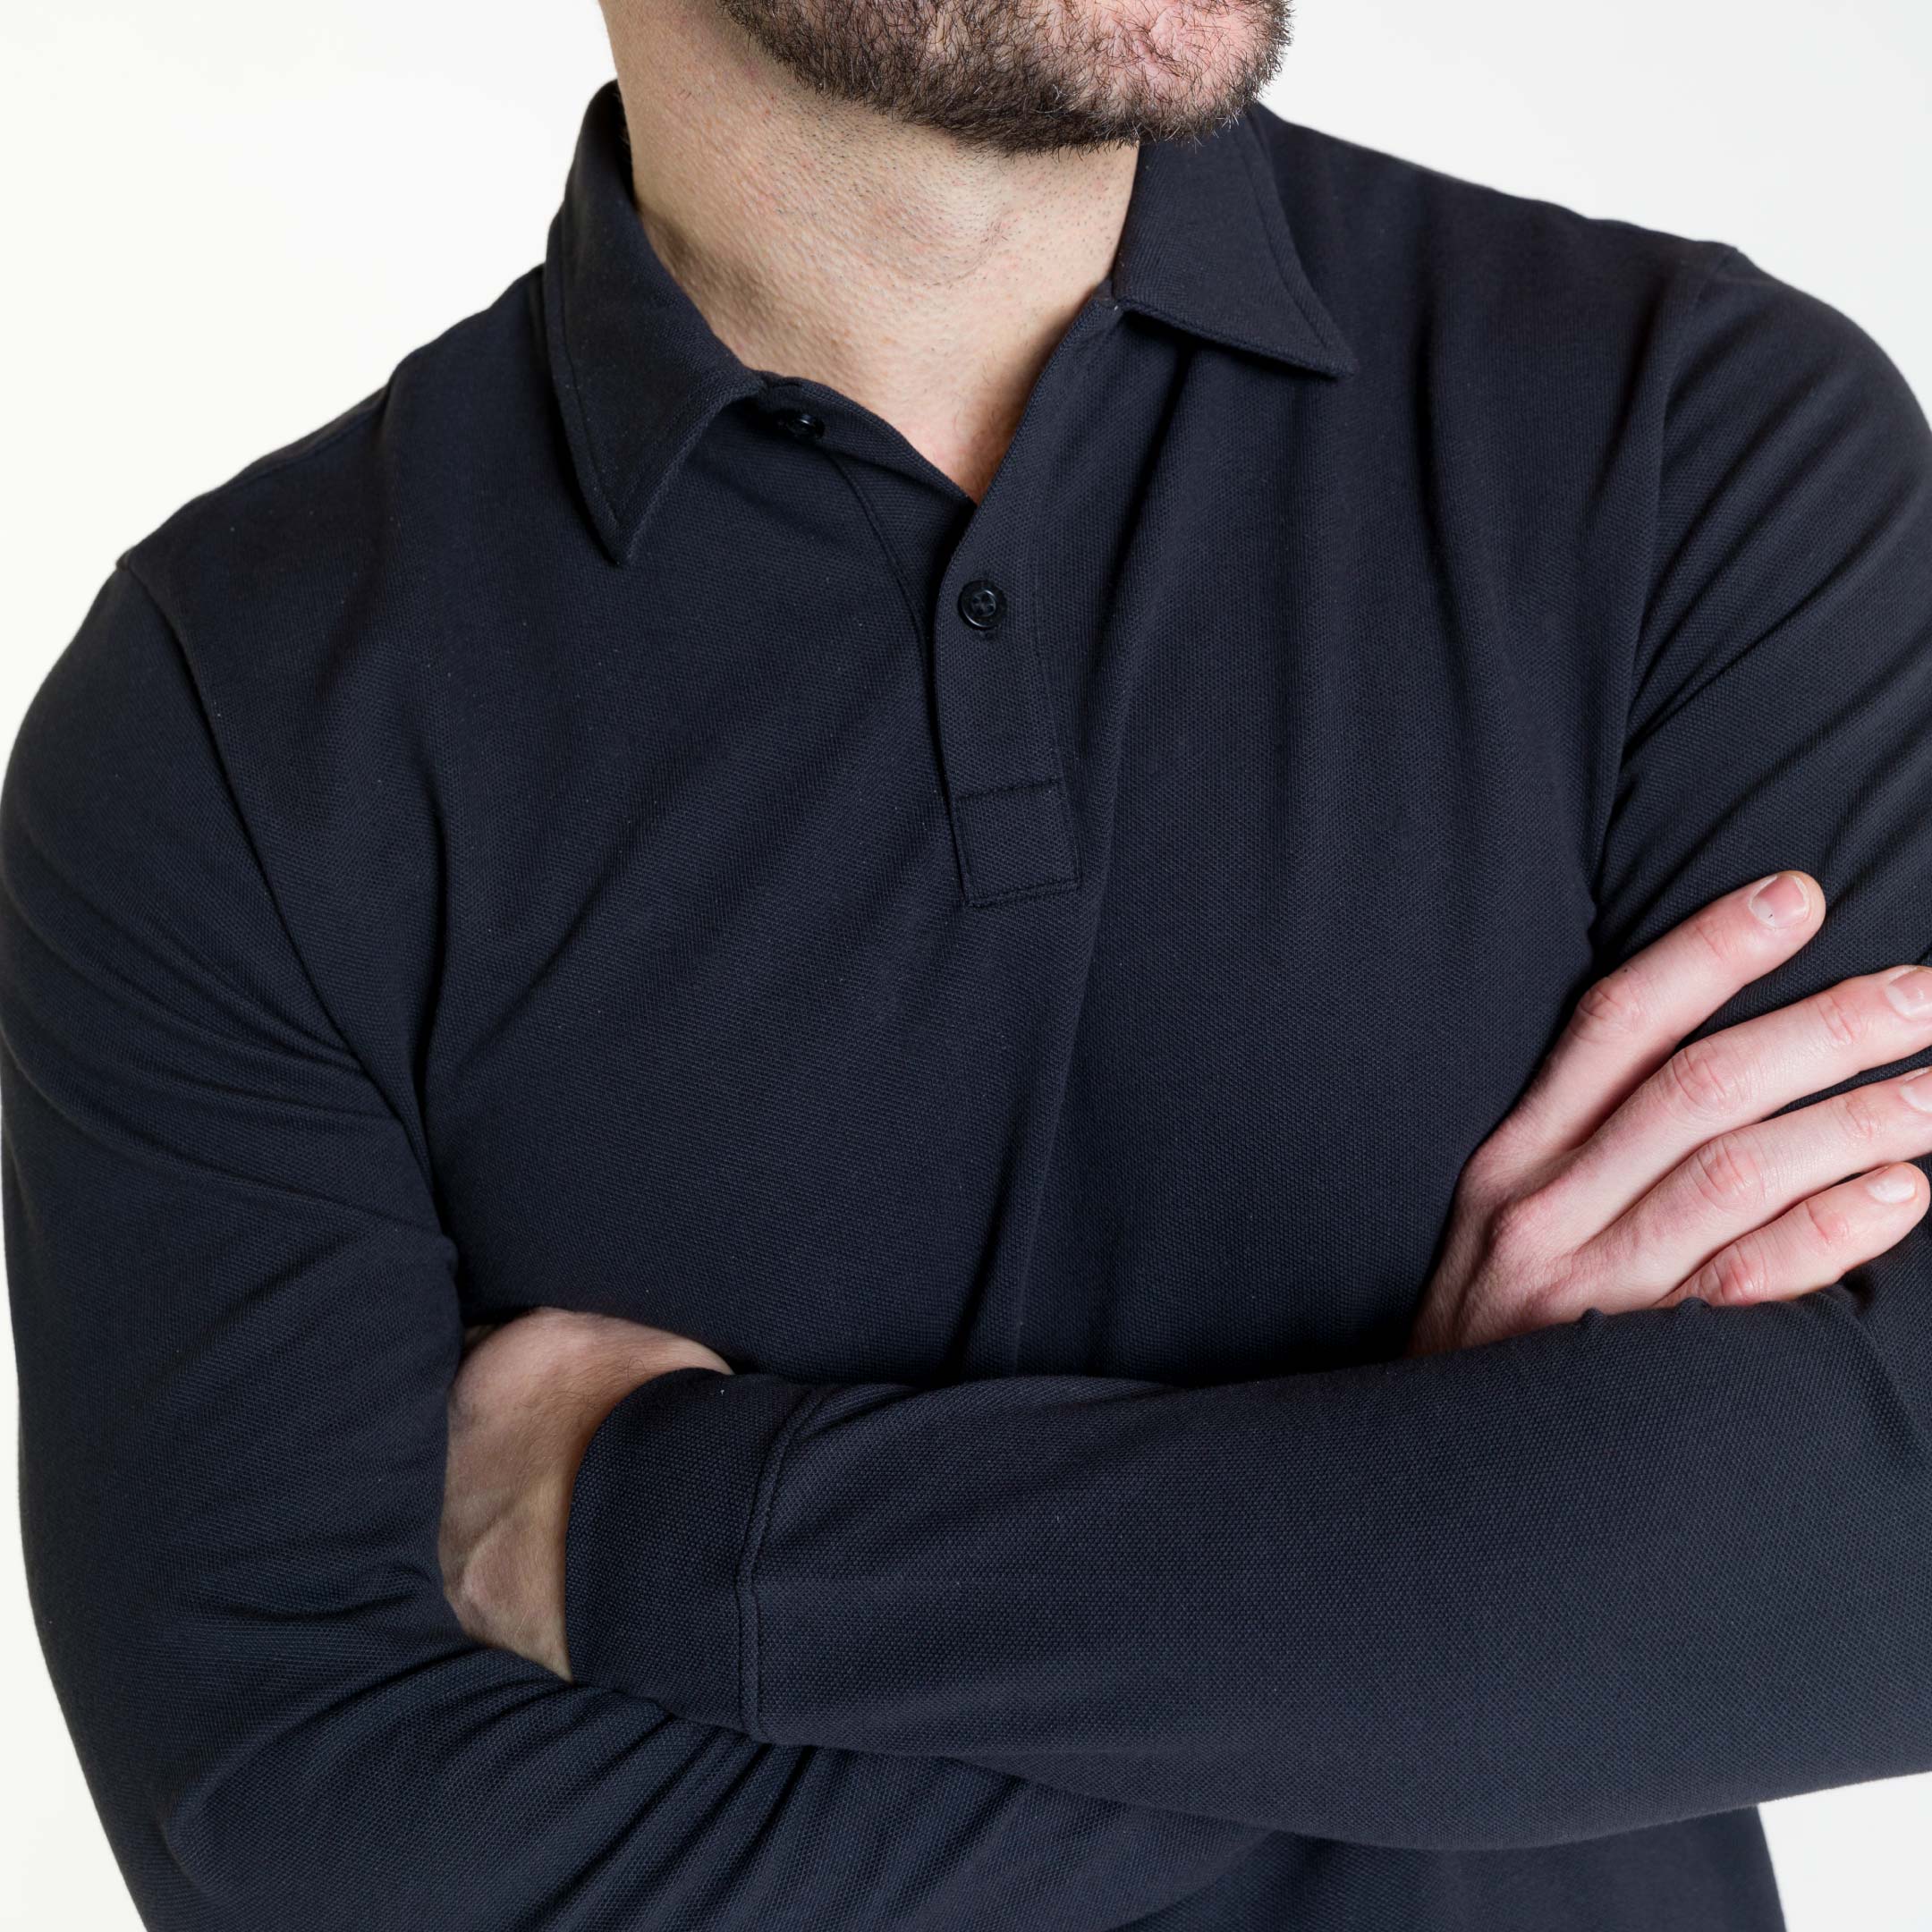 Men's Long Sleeve Pique Polo Shirt in Black